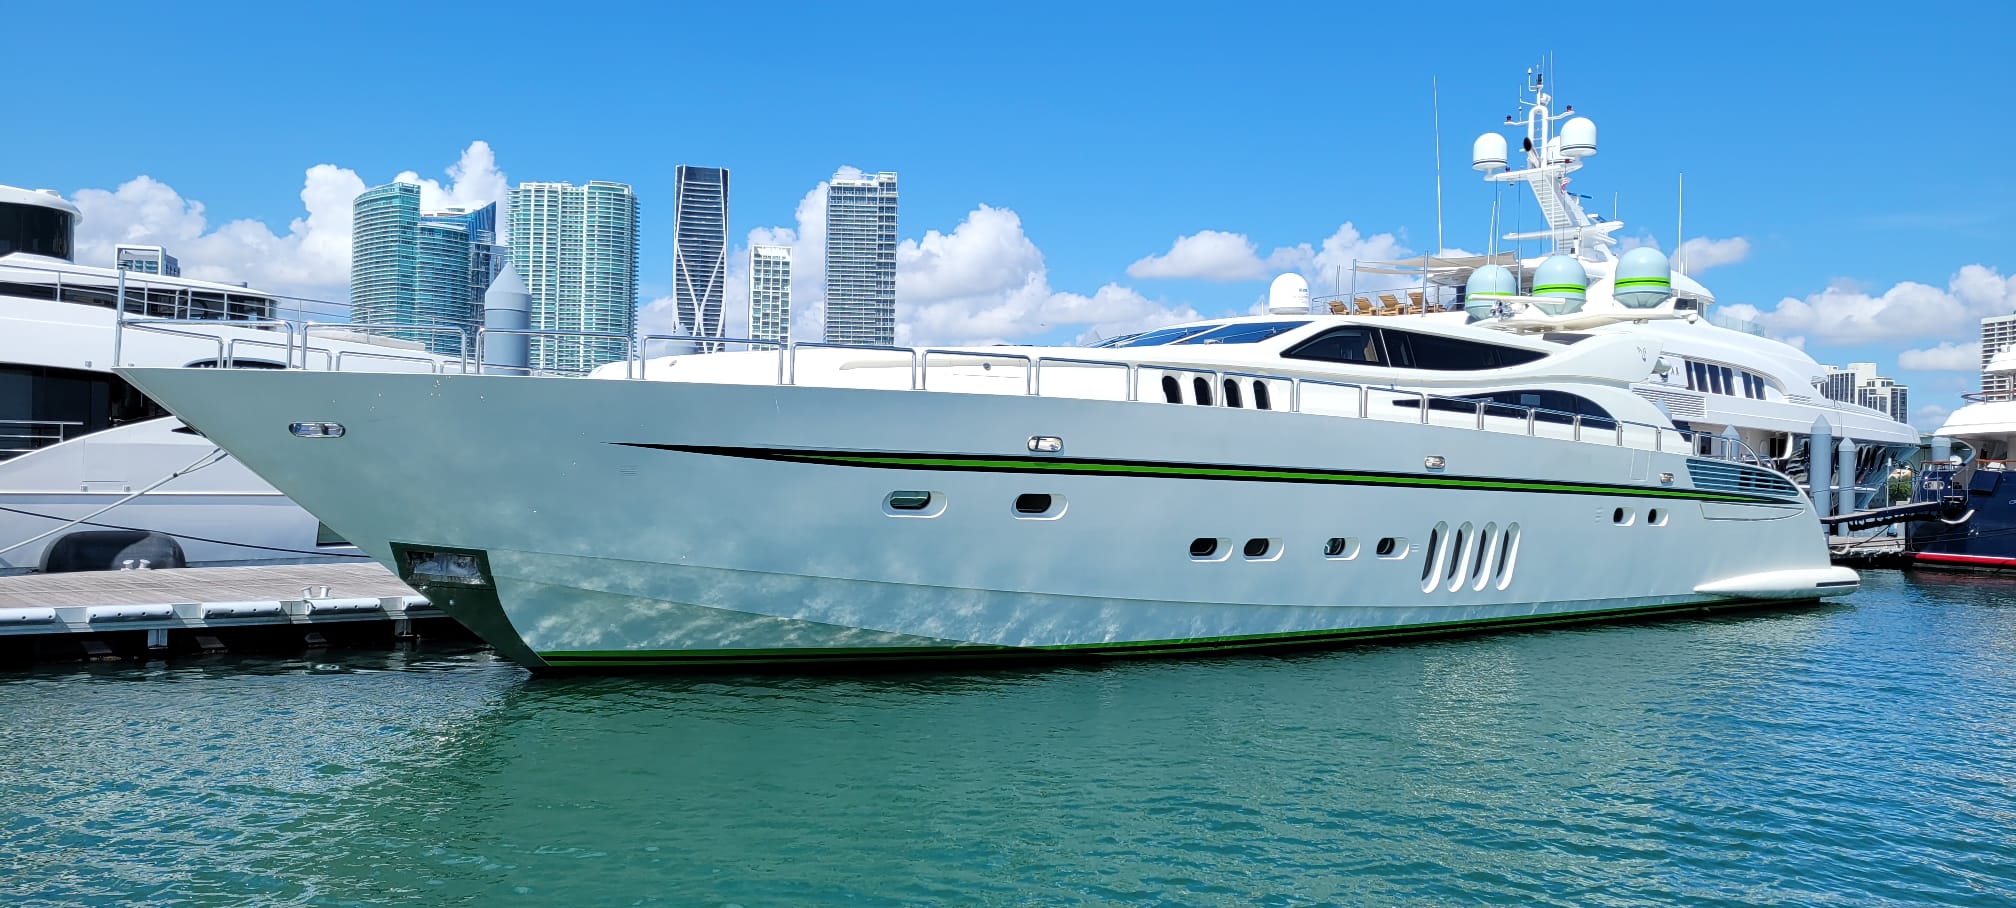 super yacht in miami